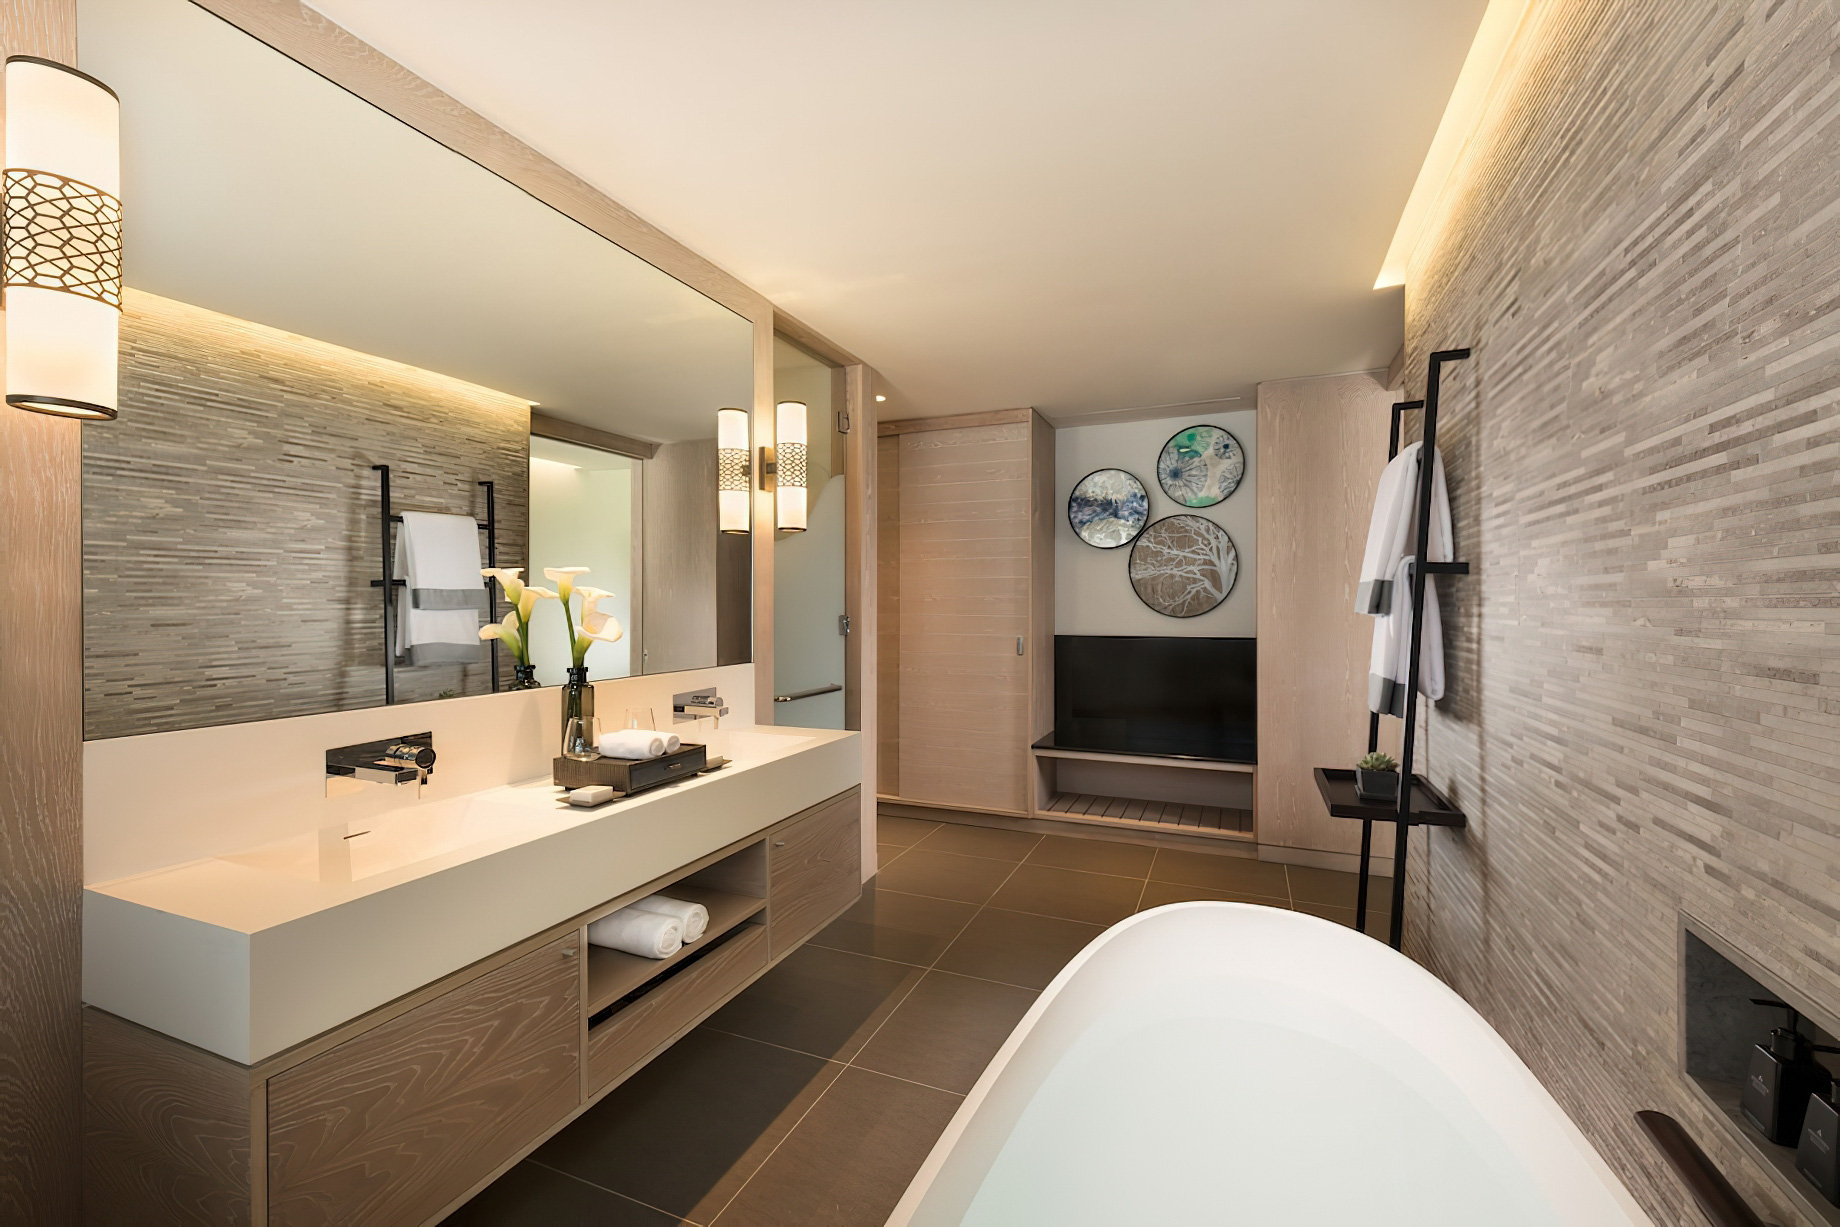 Anantara Iko Mauritius Resort & Villas – Plaine Magnien, Mauritius – Guest Room Bathroom